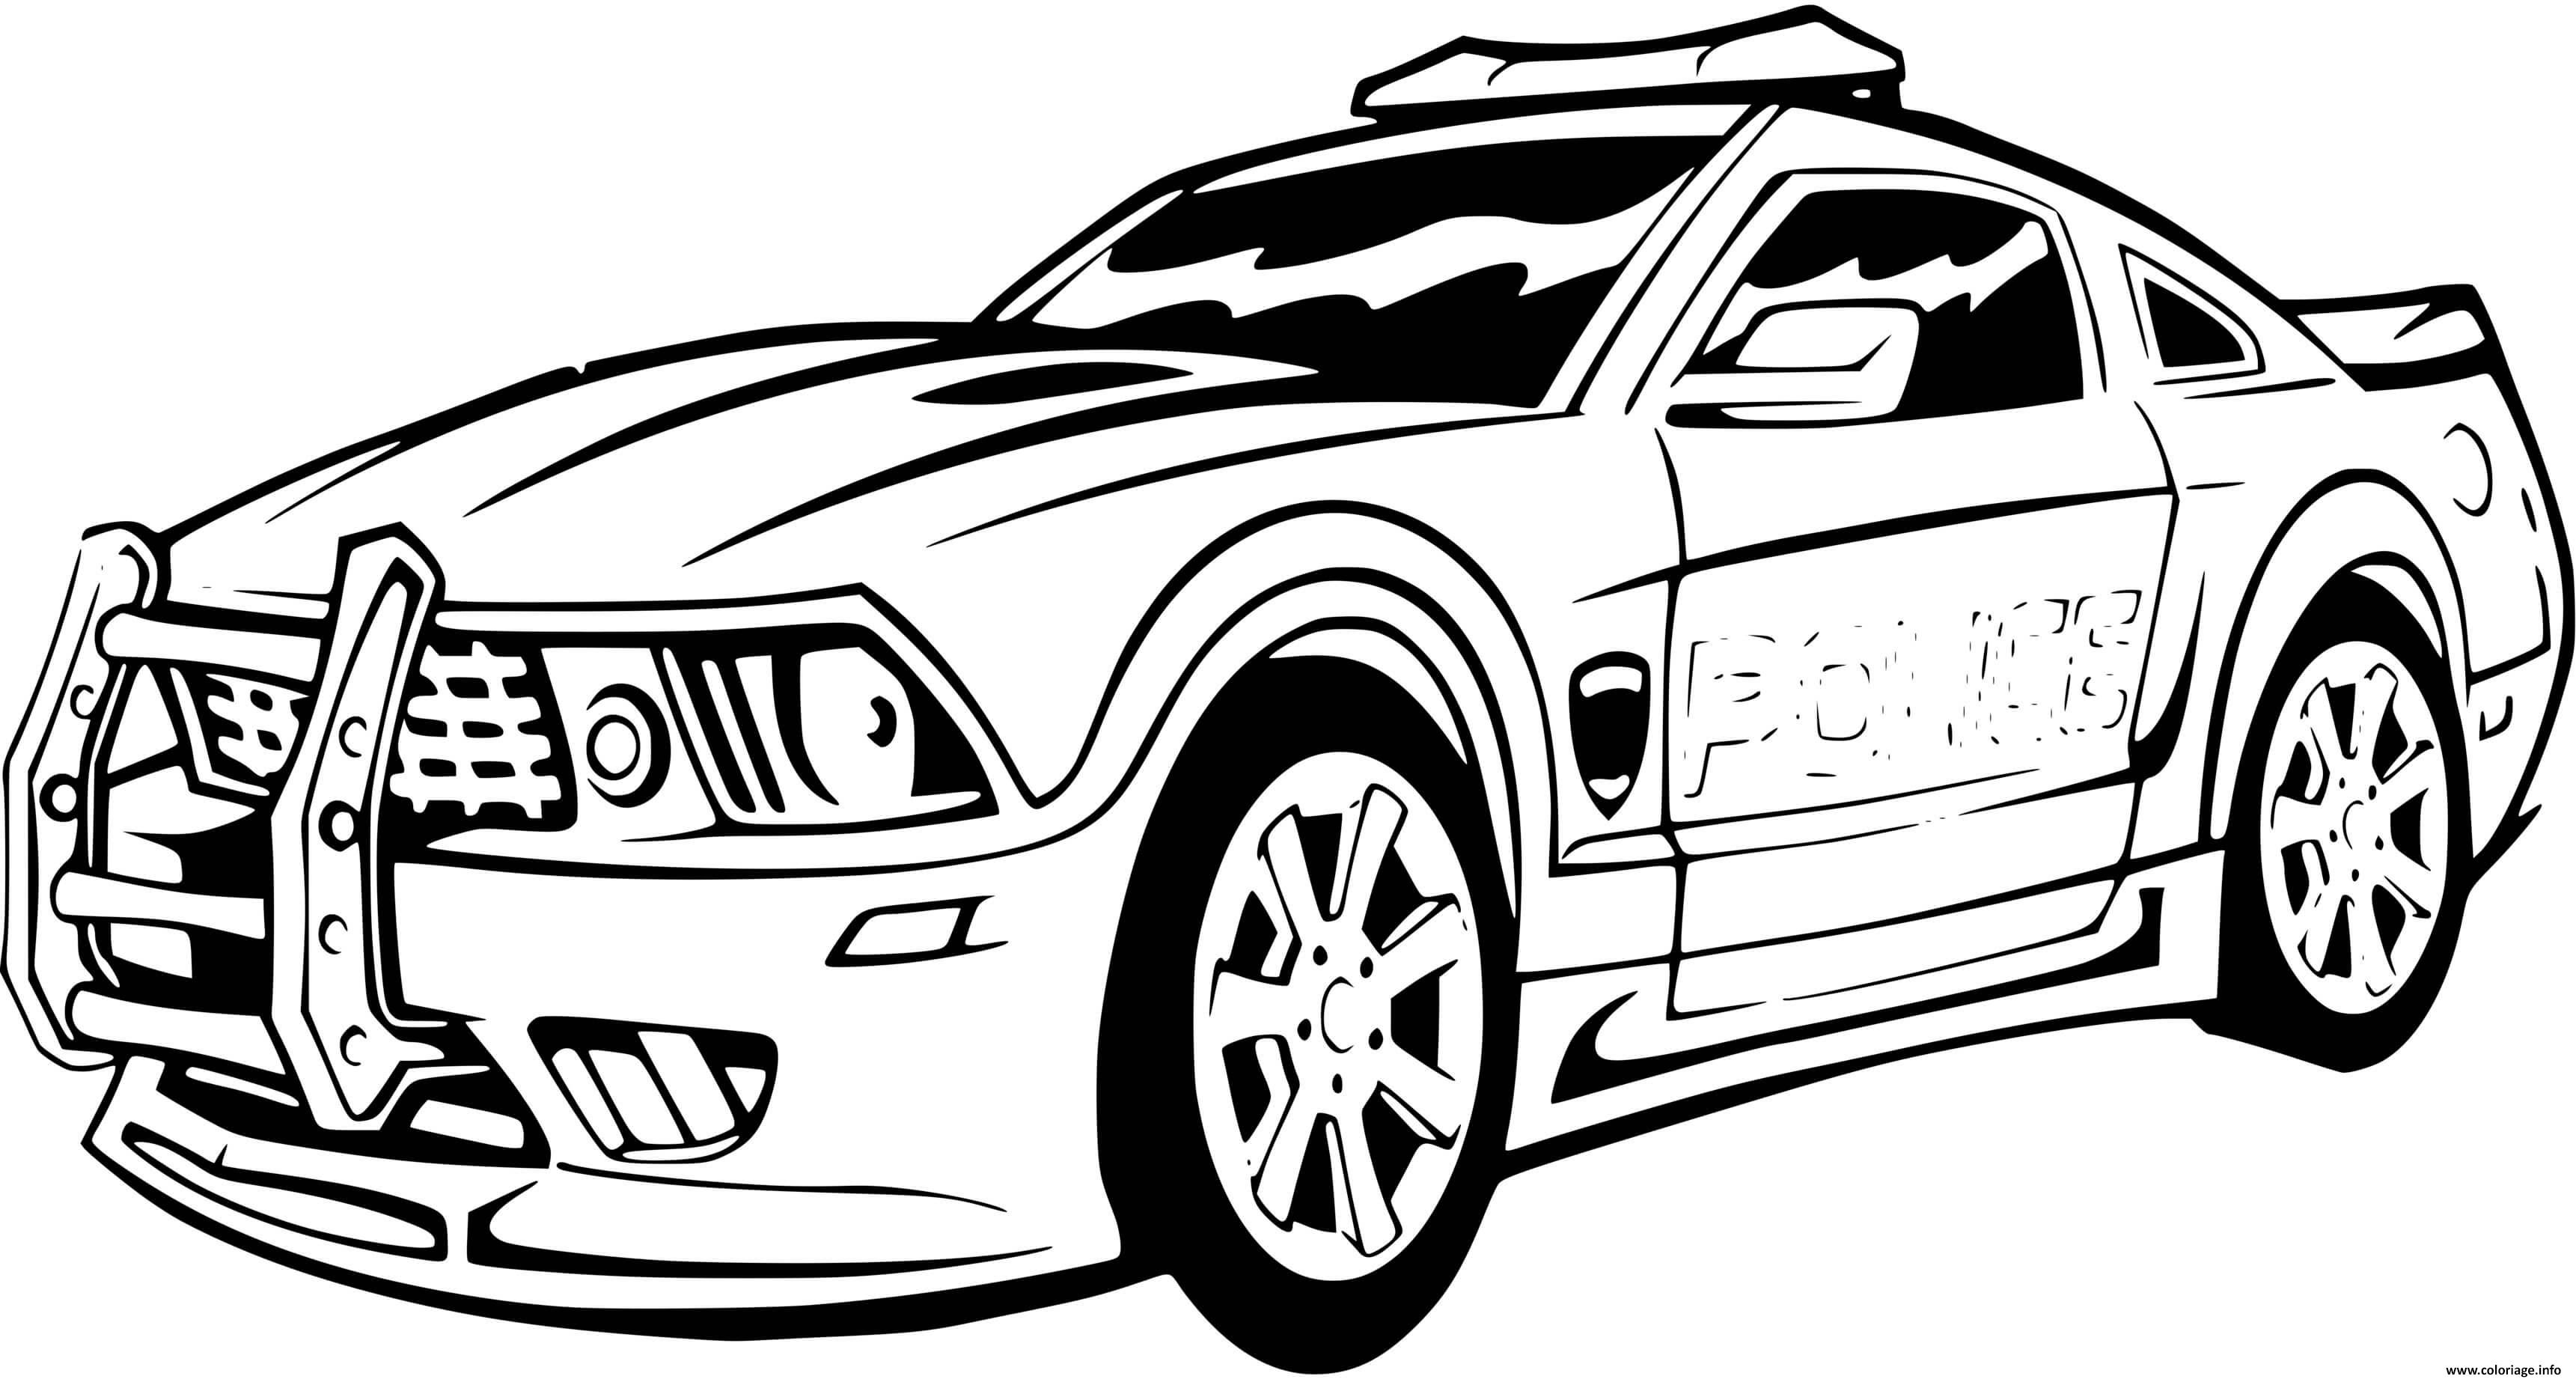 Ce dessin à colorier de voiture est téléchargeable gratuitement et disponible à c'est parfait pour se relaxer en famille avec les adultes et améliorer la motricité de nos petits sur ce coloriage de voiture. Coloriage Voiture De Police Sport Mustang Ford Jecolorie Com